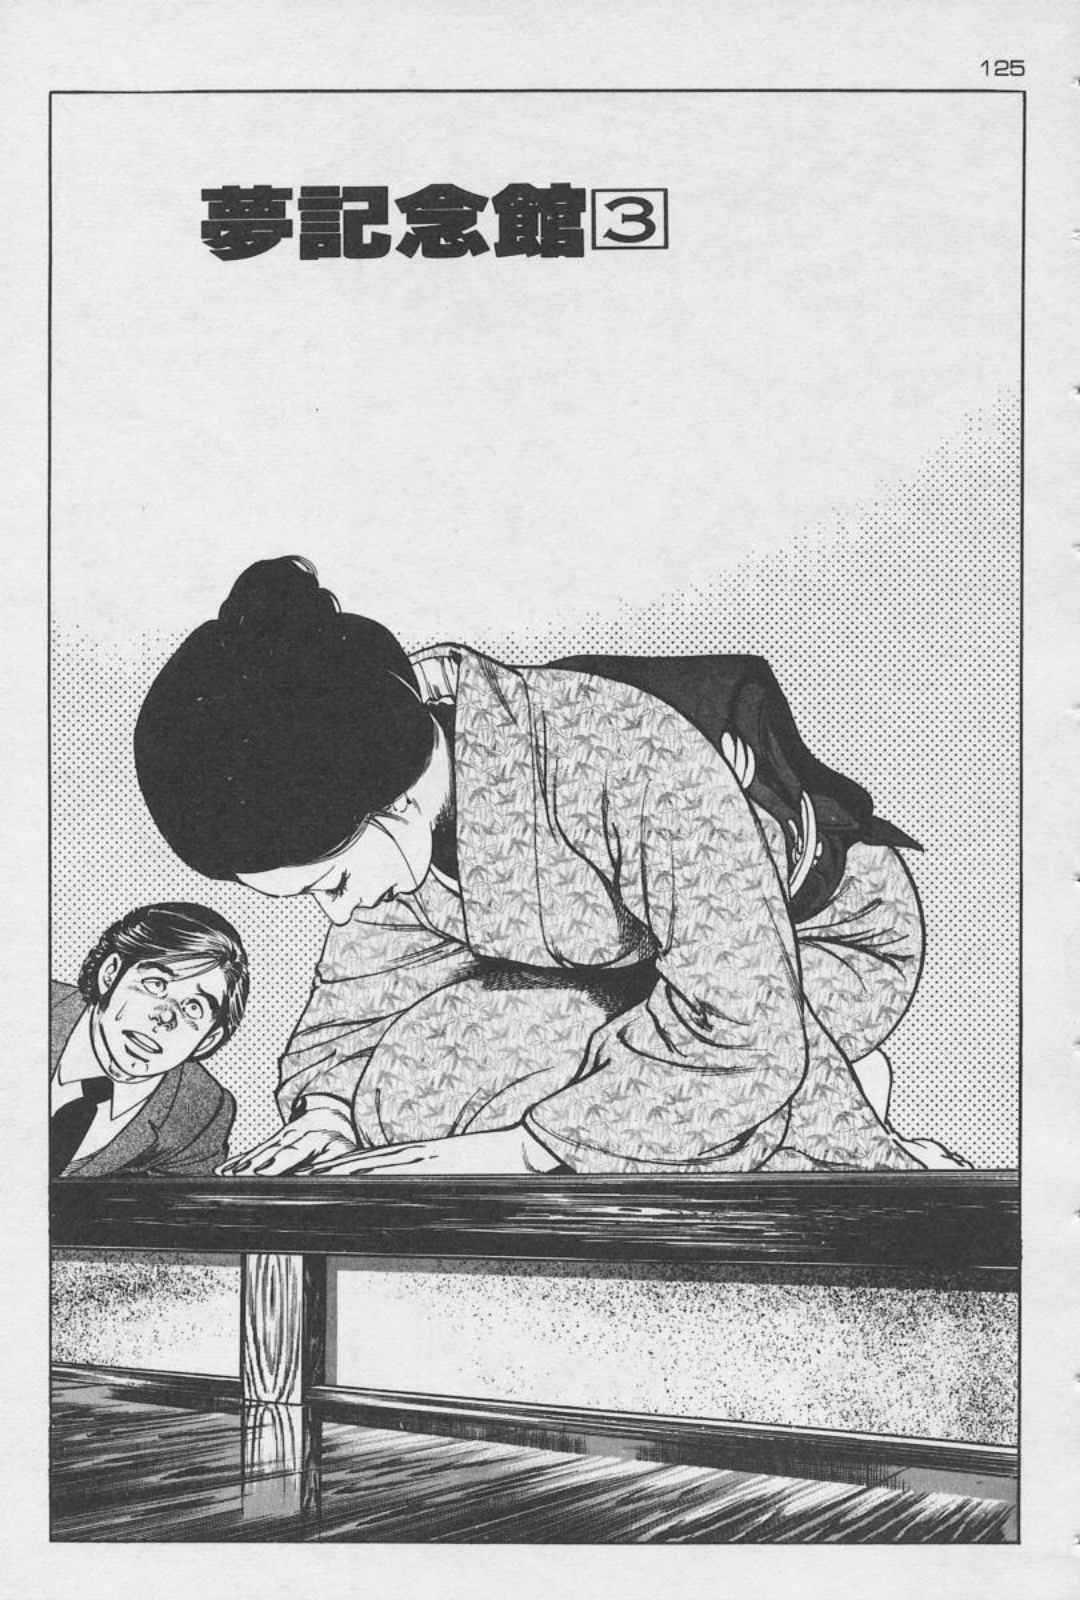 [Kano Seisaku, Koike Kazuo] Jikken Ningyou Dummy Oscar Vol.09 [叶精作, 小池一夫] 実験人形ダミー・オスカー 第09巻